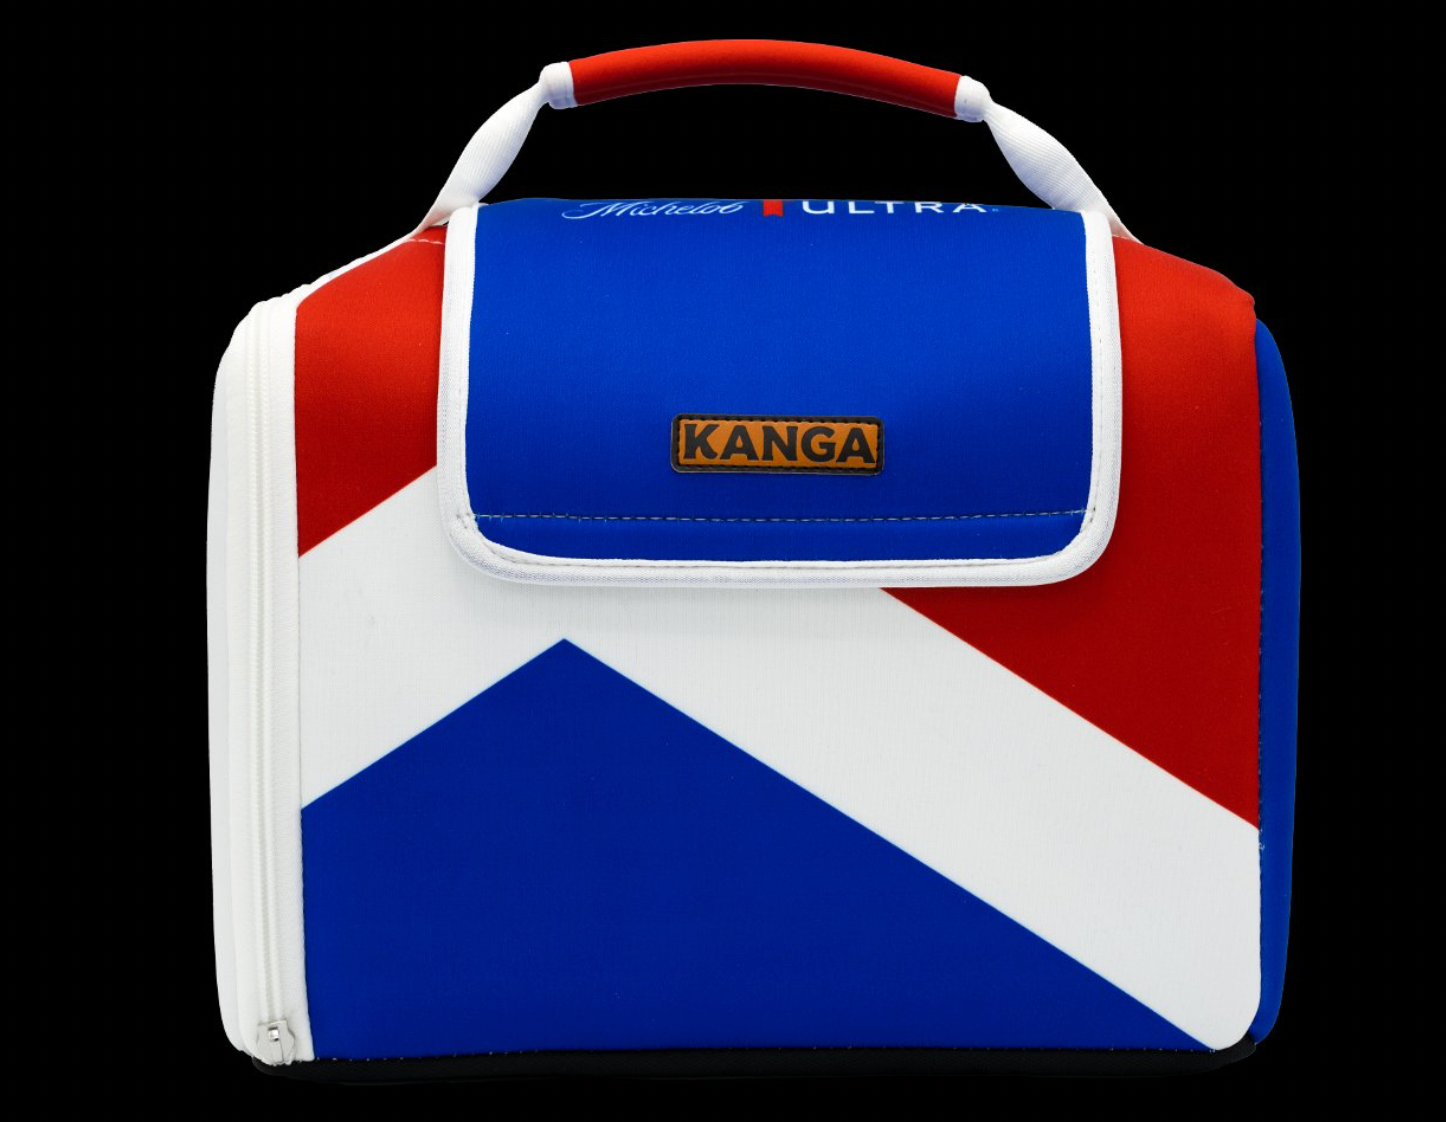 Kanga Cooler Realtree 24-Pack Kase Mate – The Southern Spirit